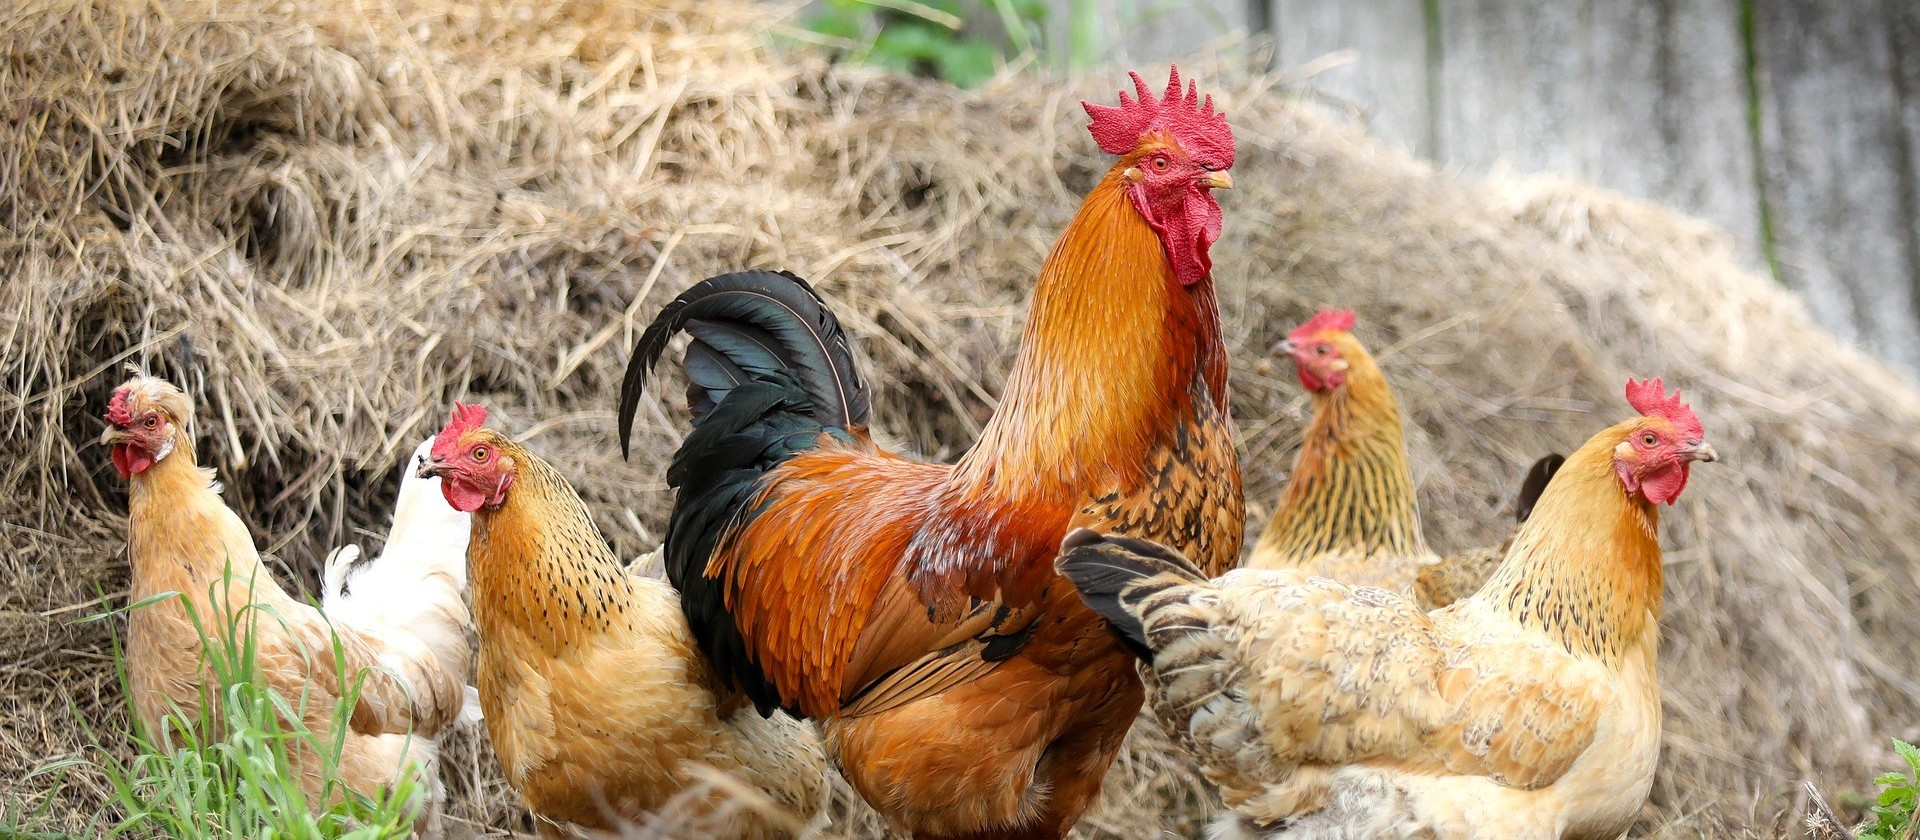 Frango com Salmonella: o que o avicultor deve fazer para previnir essa bactéria 